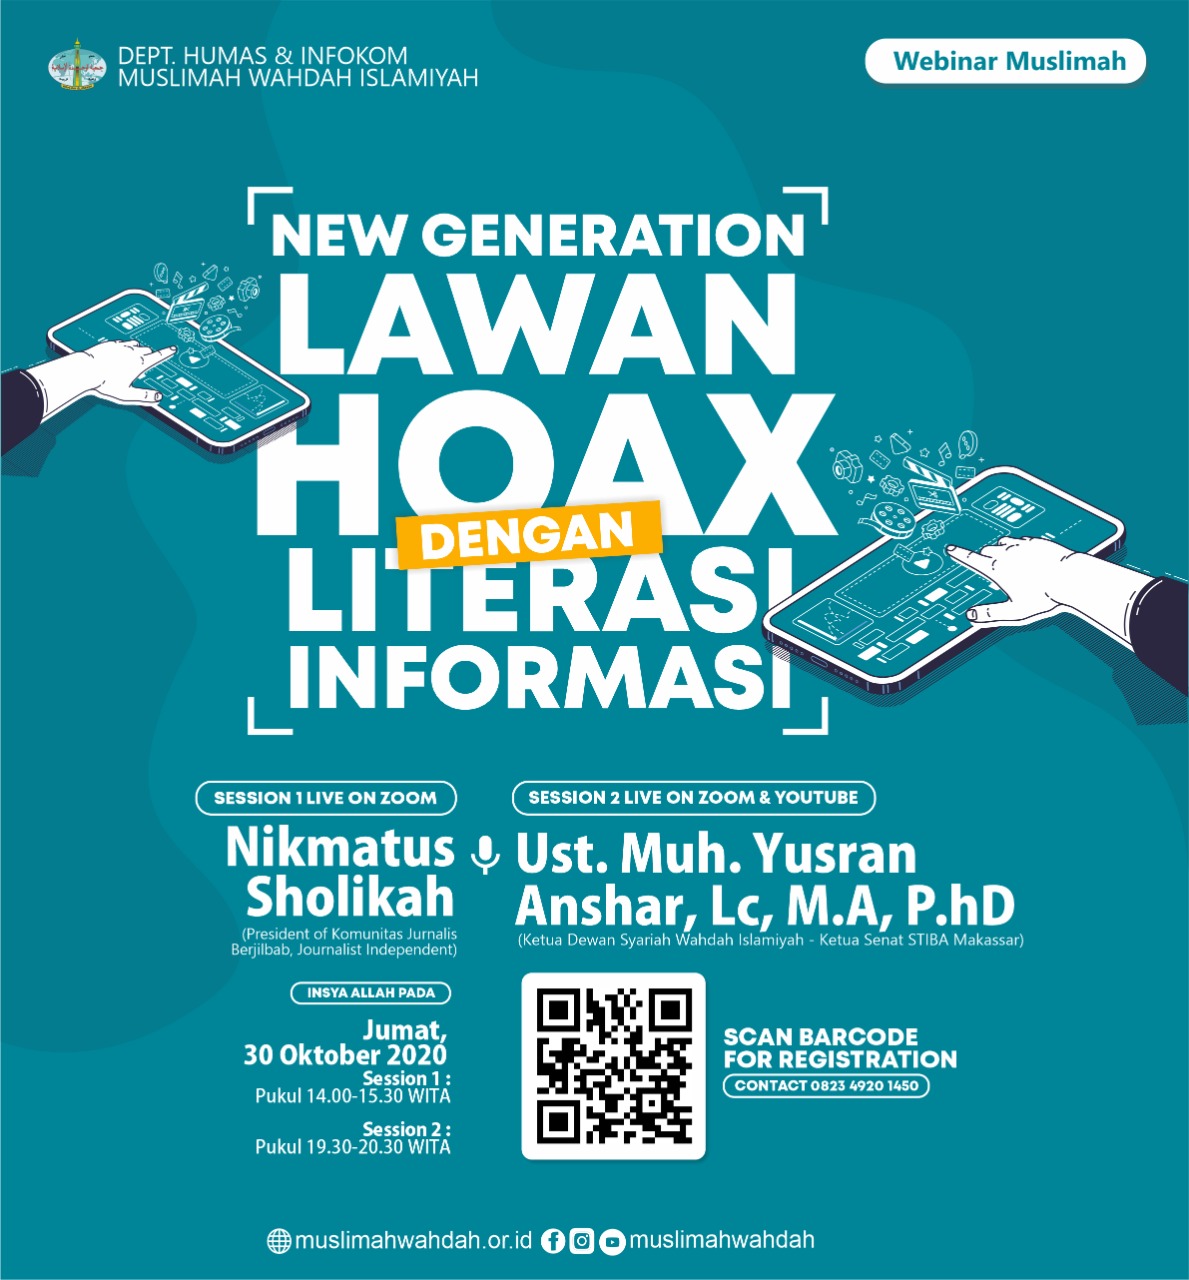 New Generation Lawan Hoax dengan Literasi Informasi